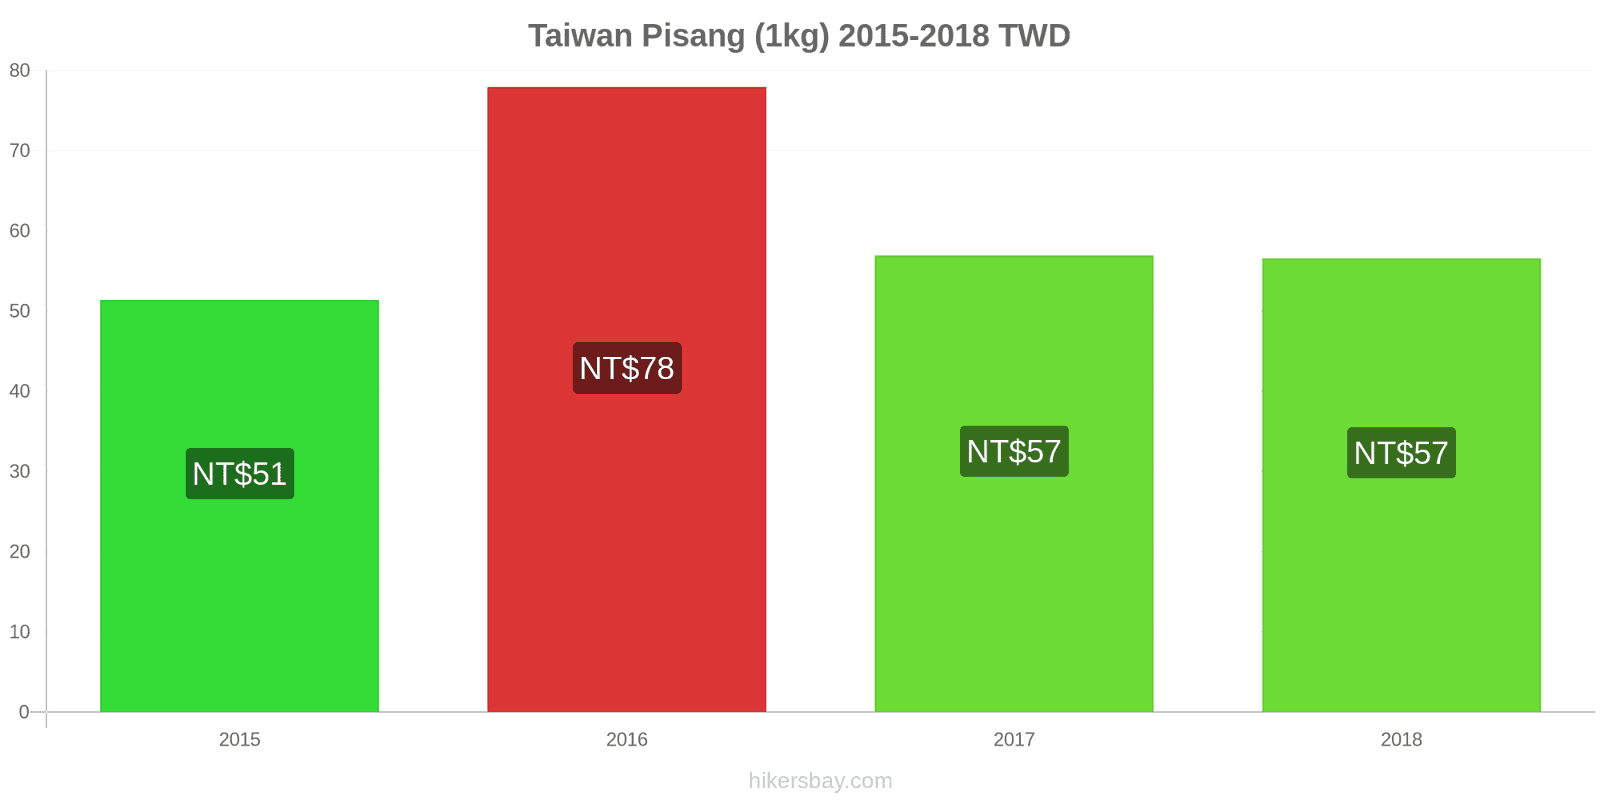 Taiwan perubahan harga Pisang (1kg) hikersbay.com